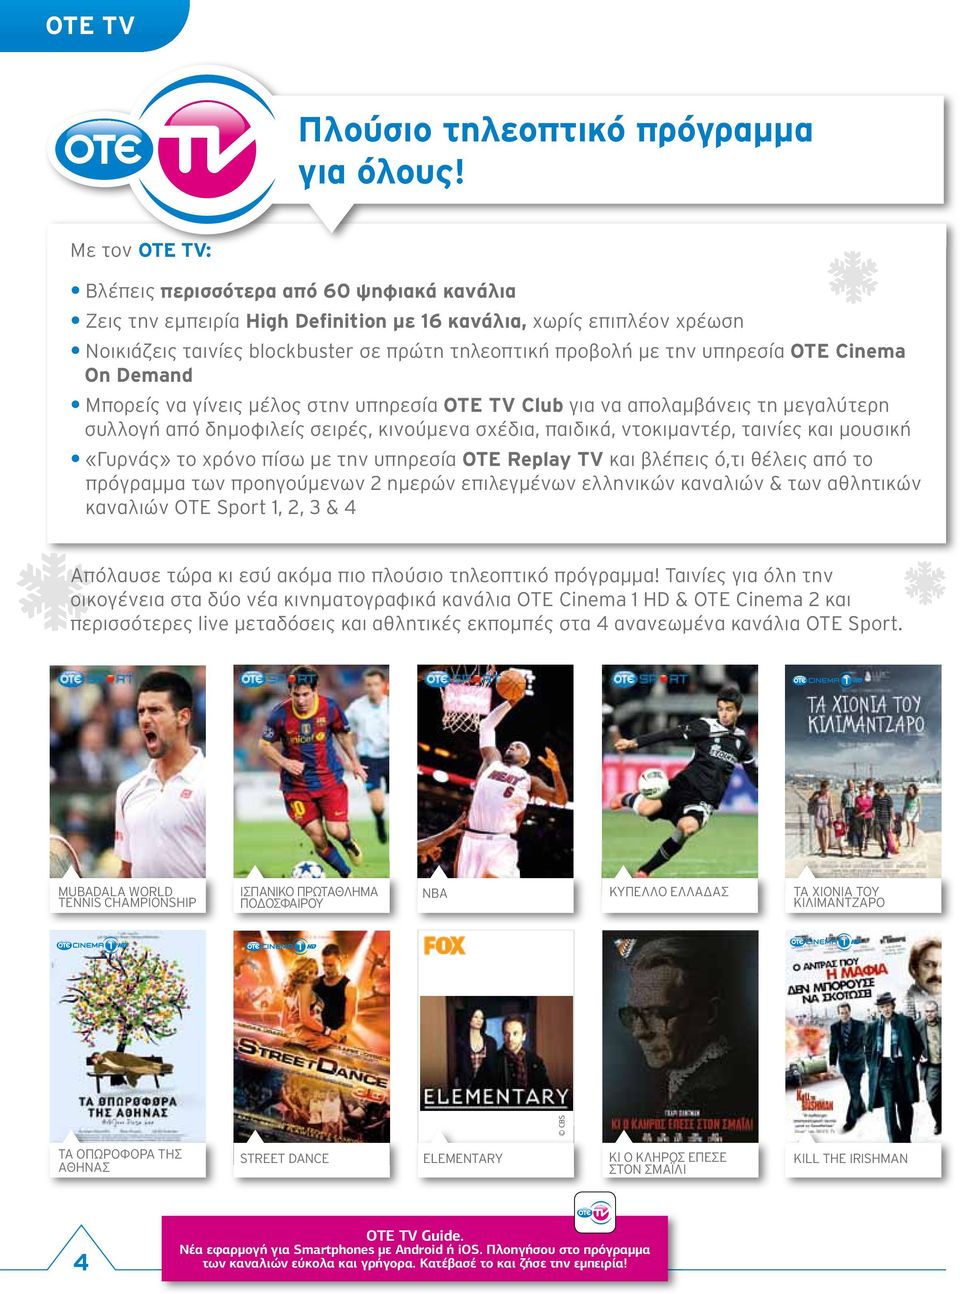 υπηρεσία OTE Cinema On Demand Μπορείς να γίνεις μέλος στην υπηρεσία OTE TV Club για να απολαμβάνεις τη μεγαλύτερη συλλογή από δημοφιλείς σειρές, κινούμενα σχέδια, παιδικά, ντοκιμαντέρ, ταινίες και